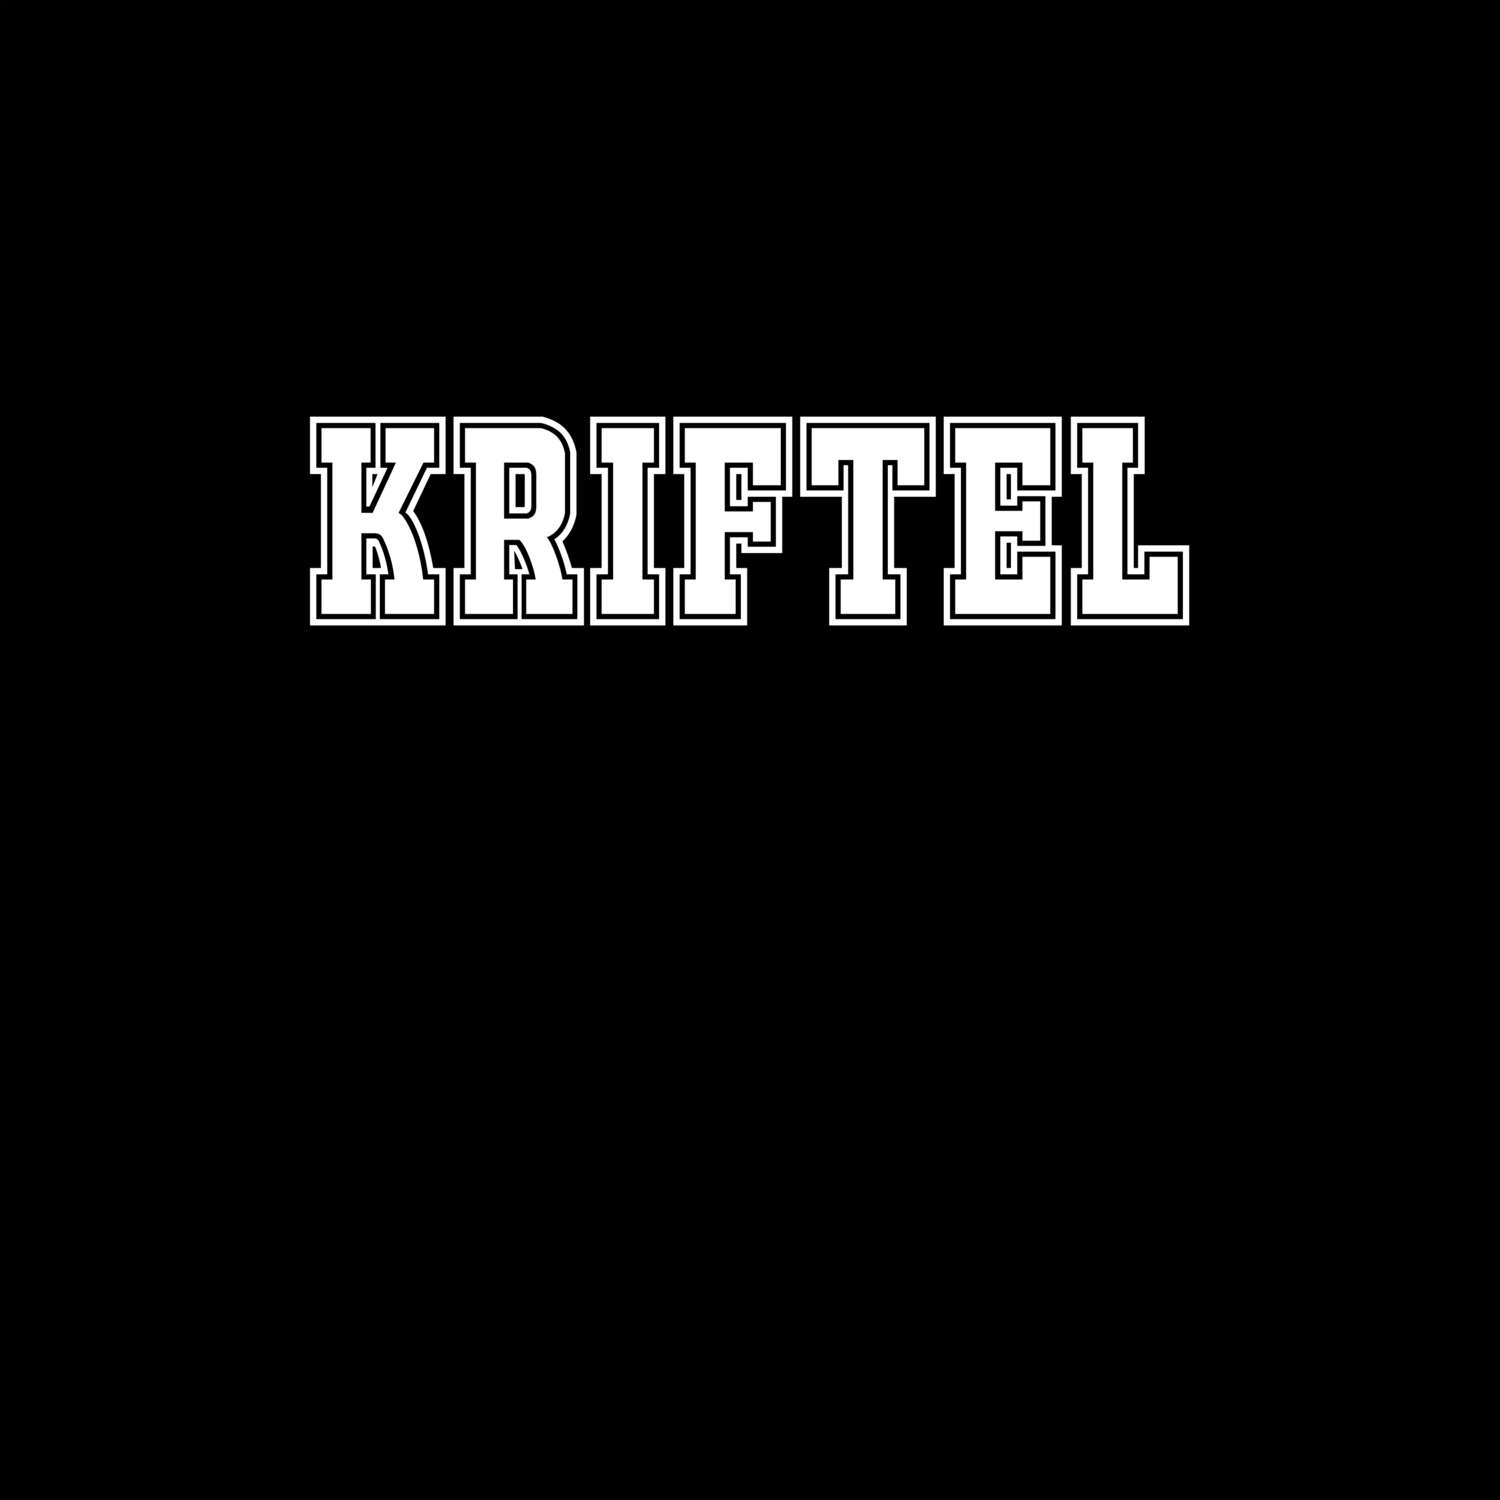 Kriftel T-Shirt »Classic«